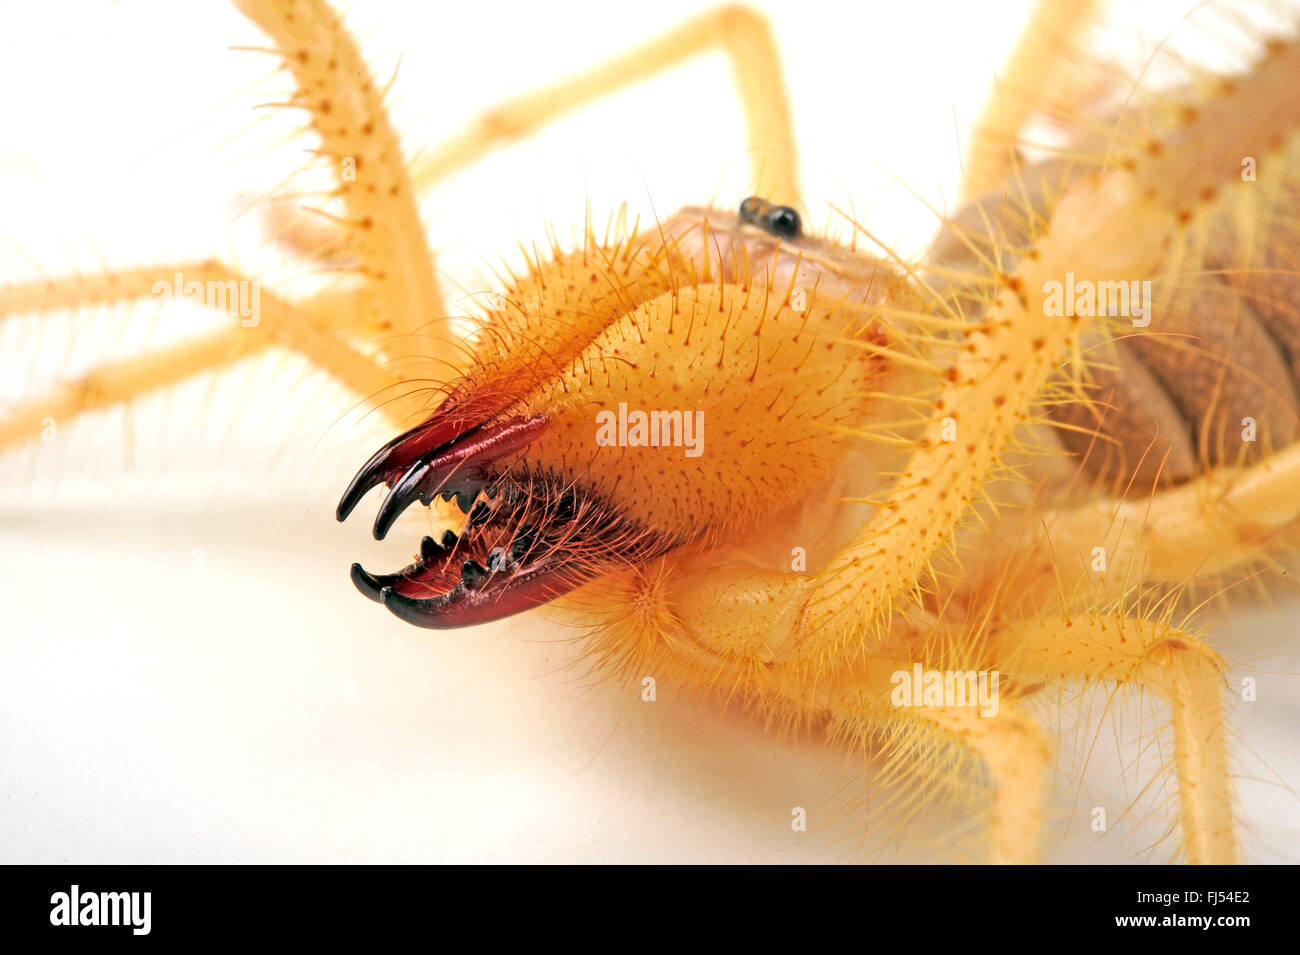 Camel ragni, vento scorpioni, Sun ragni, Solifuges (Galeodes granti), ritratto, cut-out Foto Stock